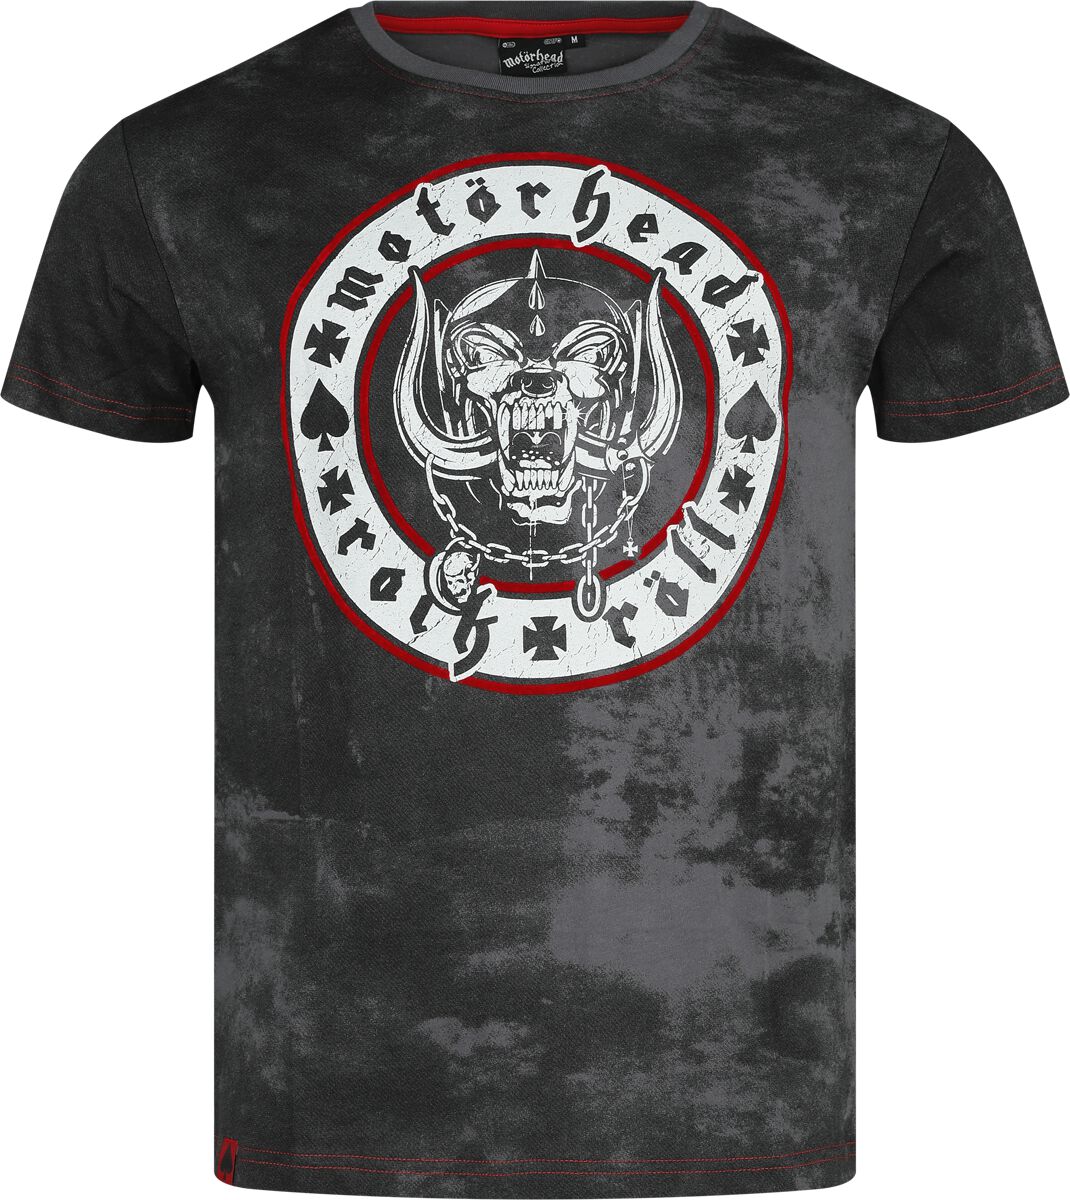 Motörhead T-Shirt - EMP Signature Collection - S bis 3XL - für Männer - Größe L - grau/schwarz  - EMP exklusives Merchandise!